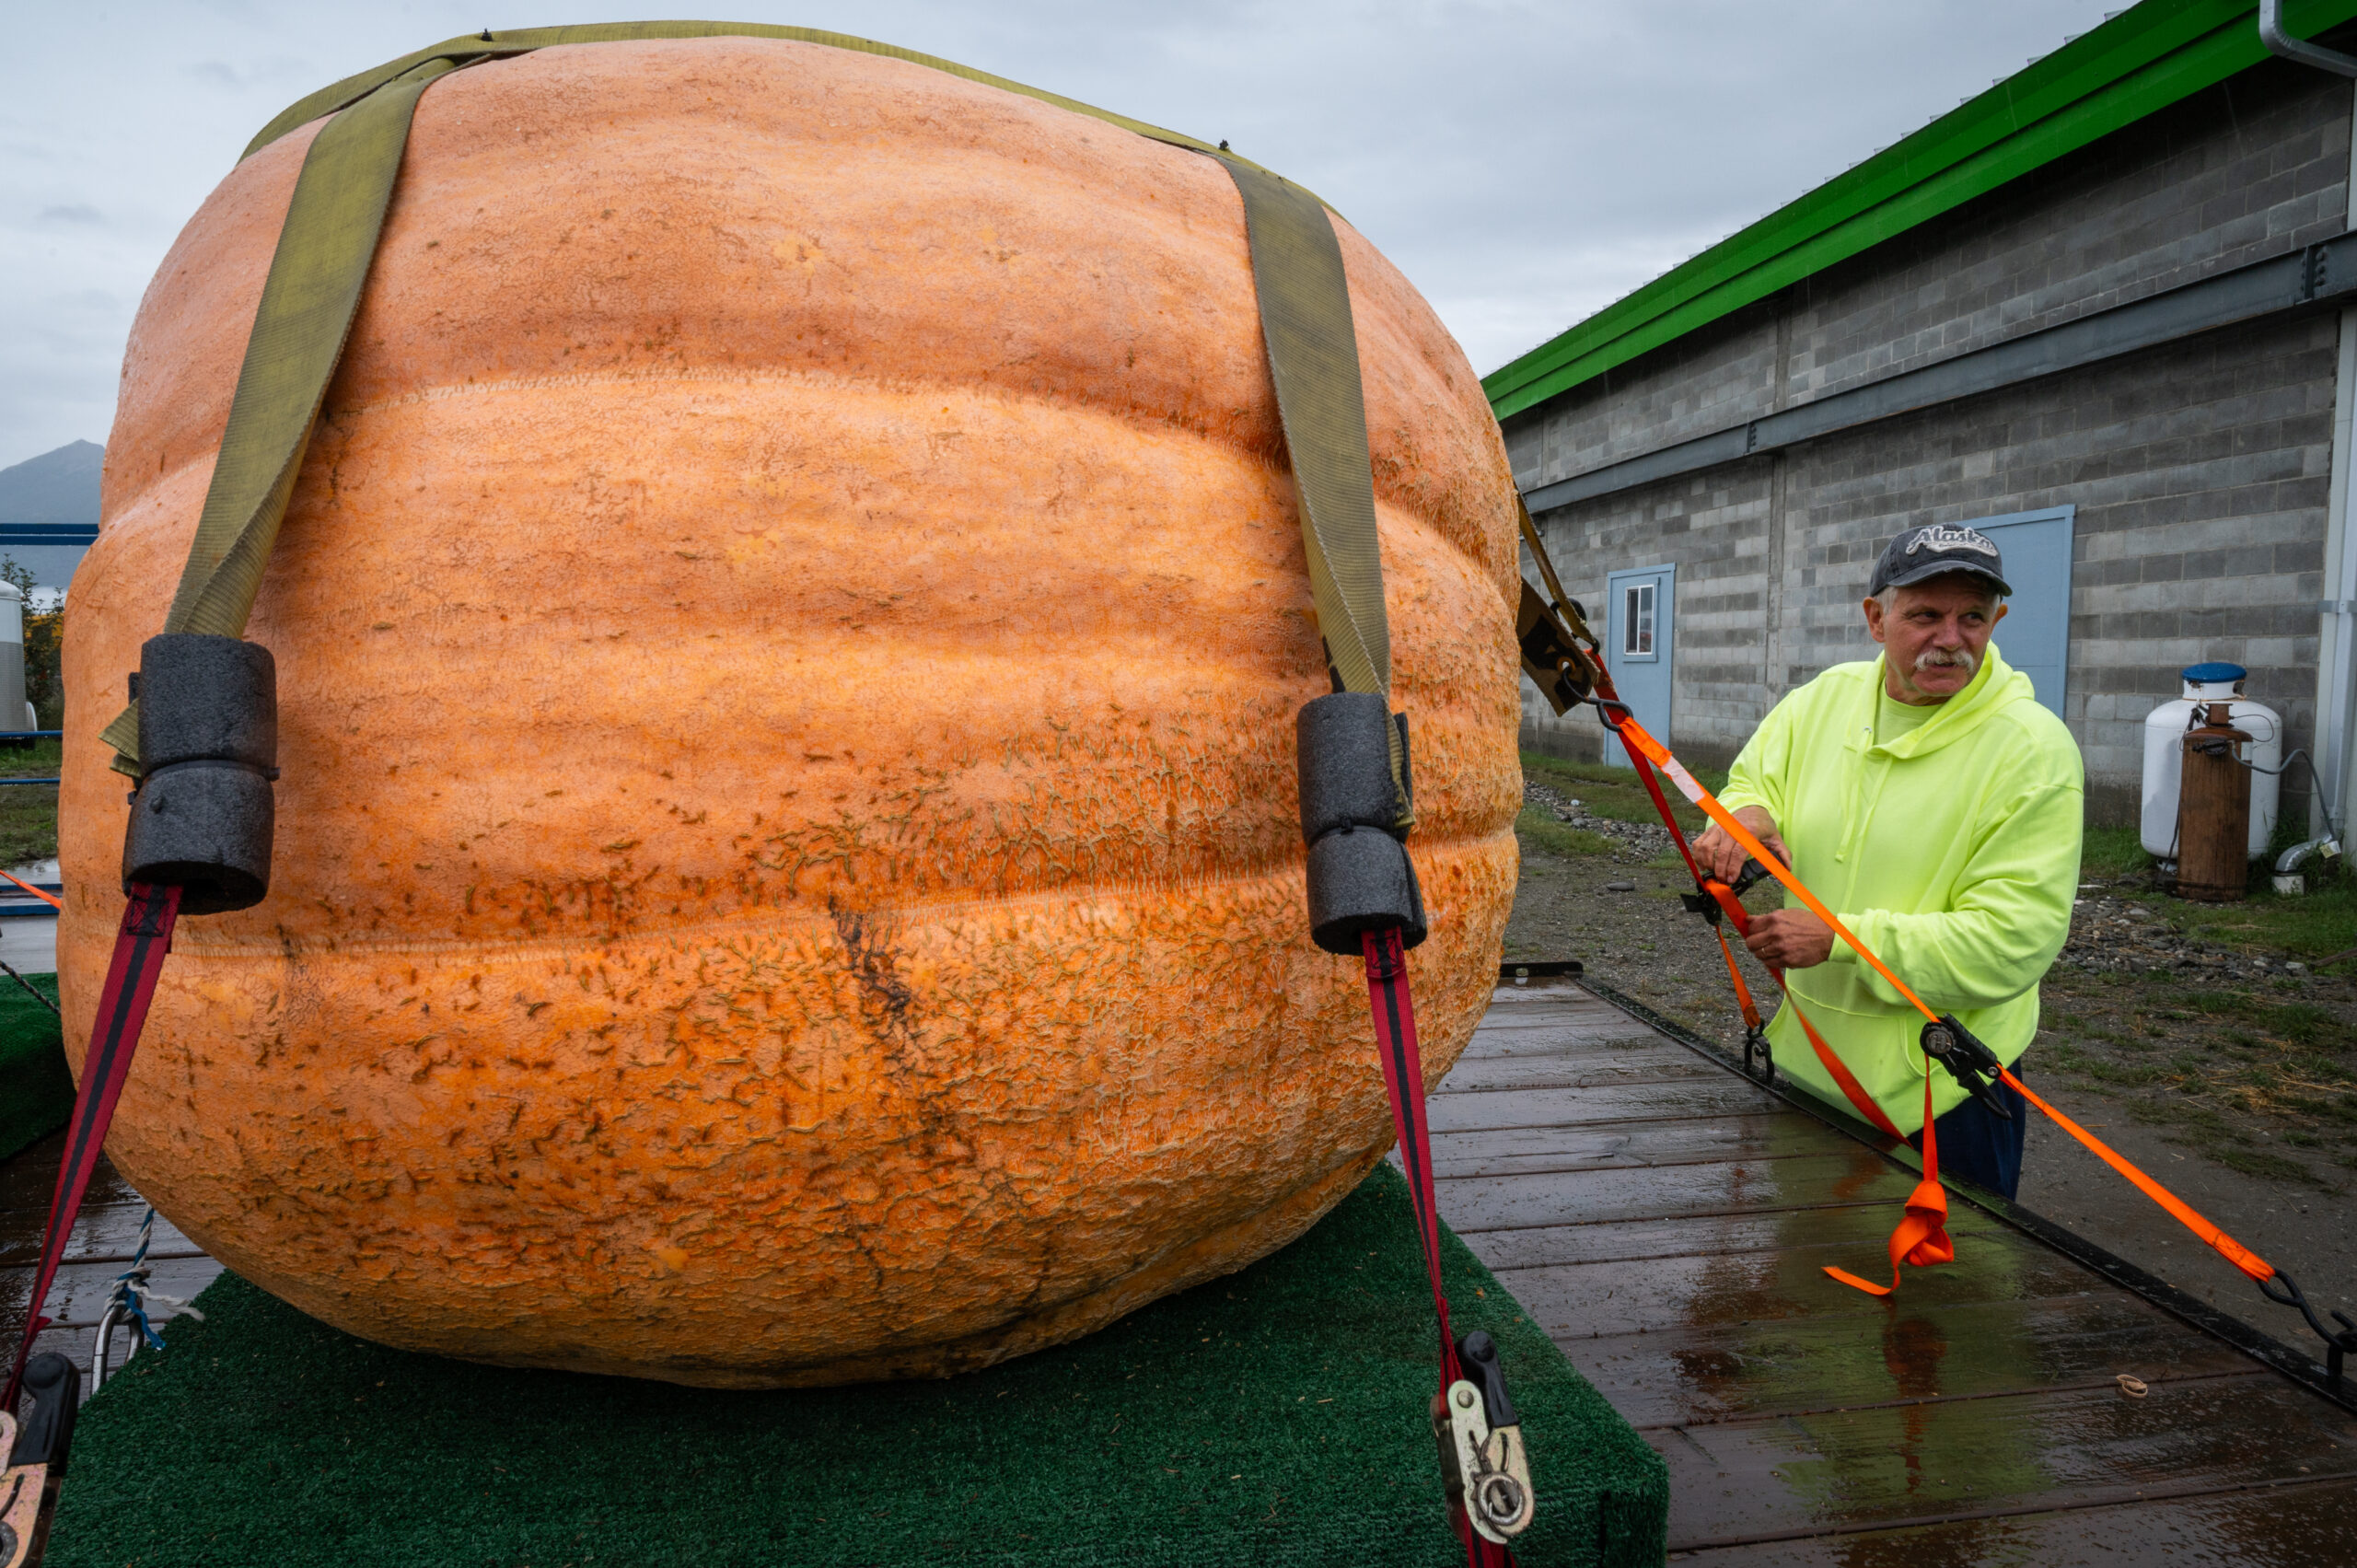 A man in a neon green sweat shirt unloads a giant pumpkin from a pallet